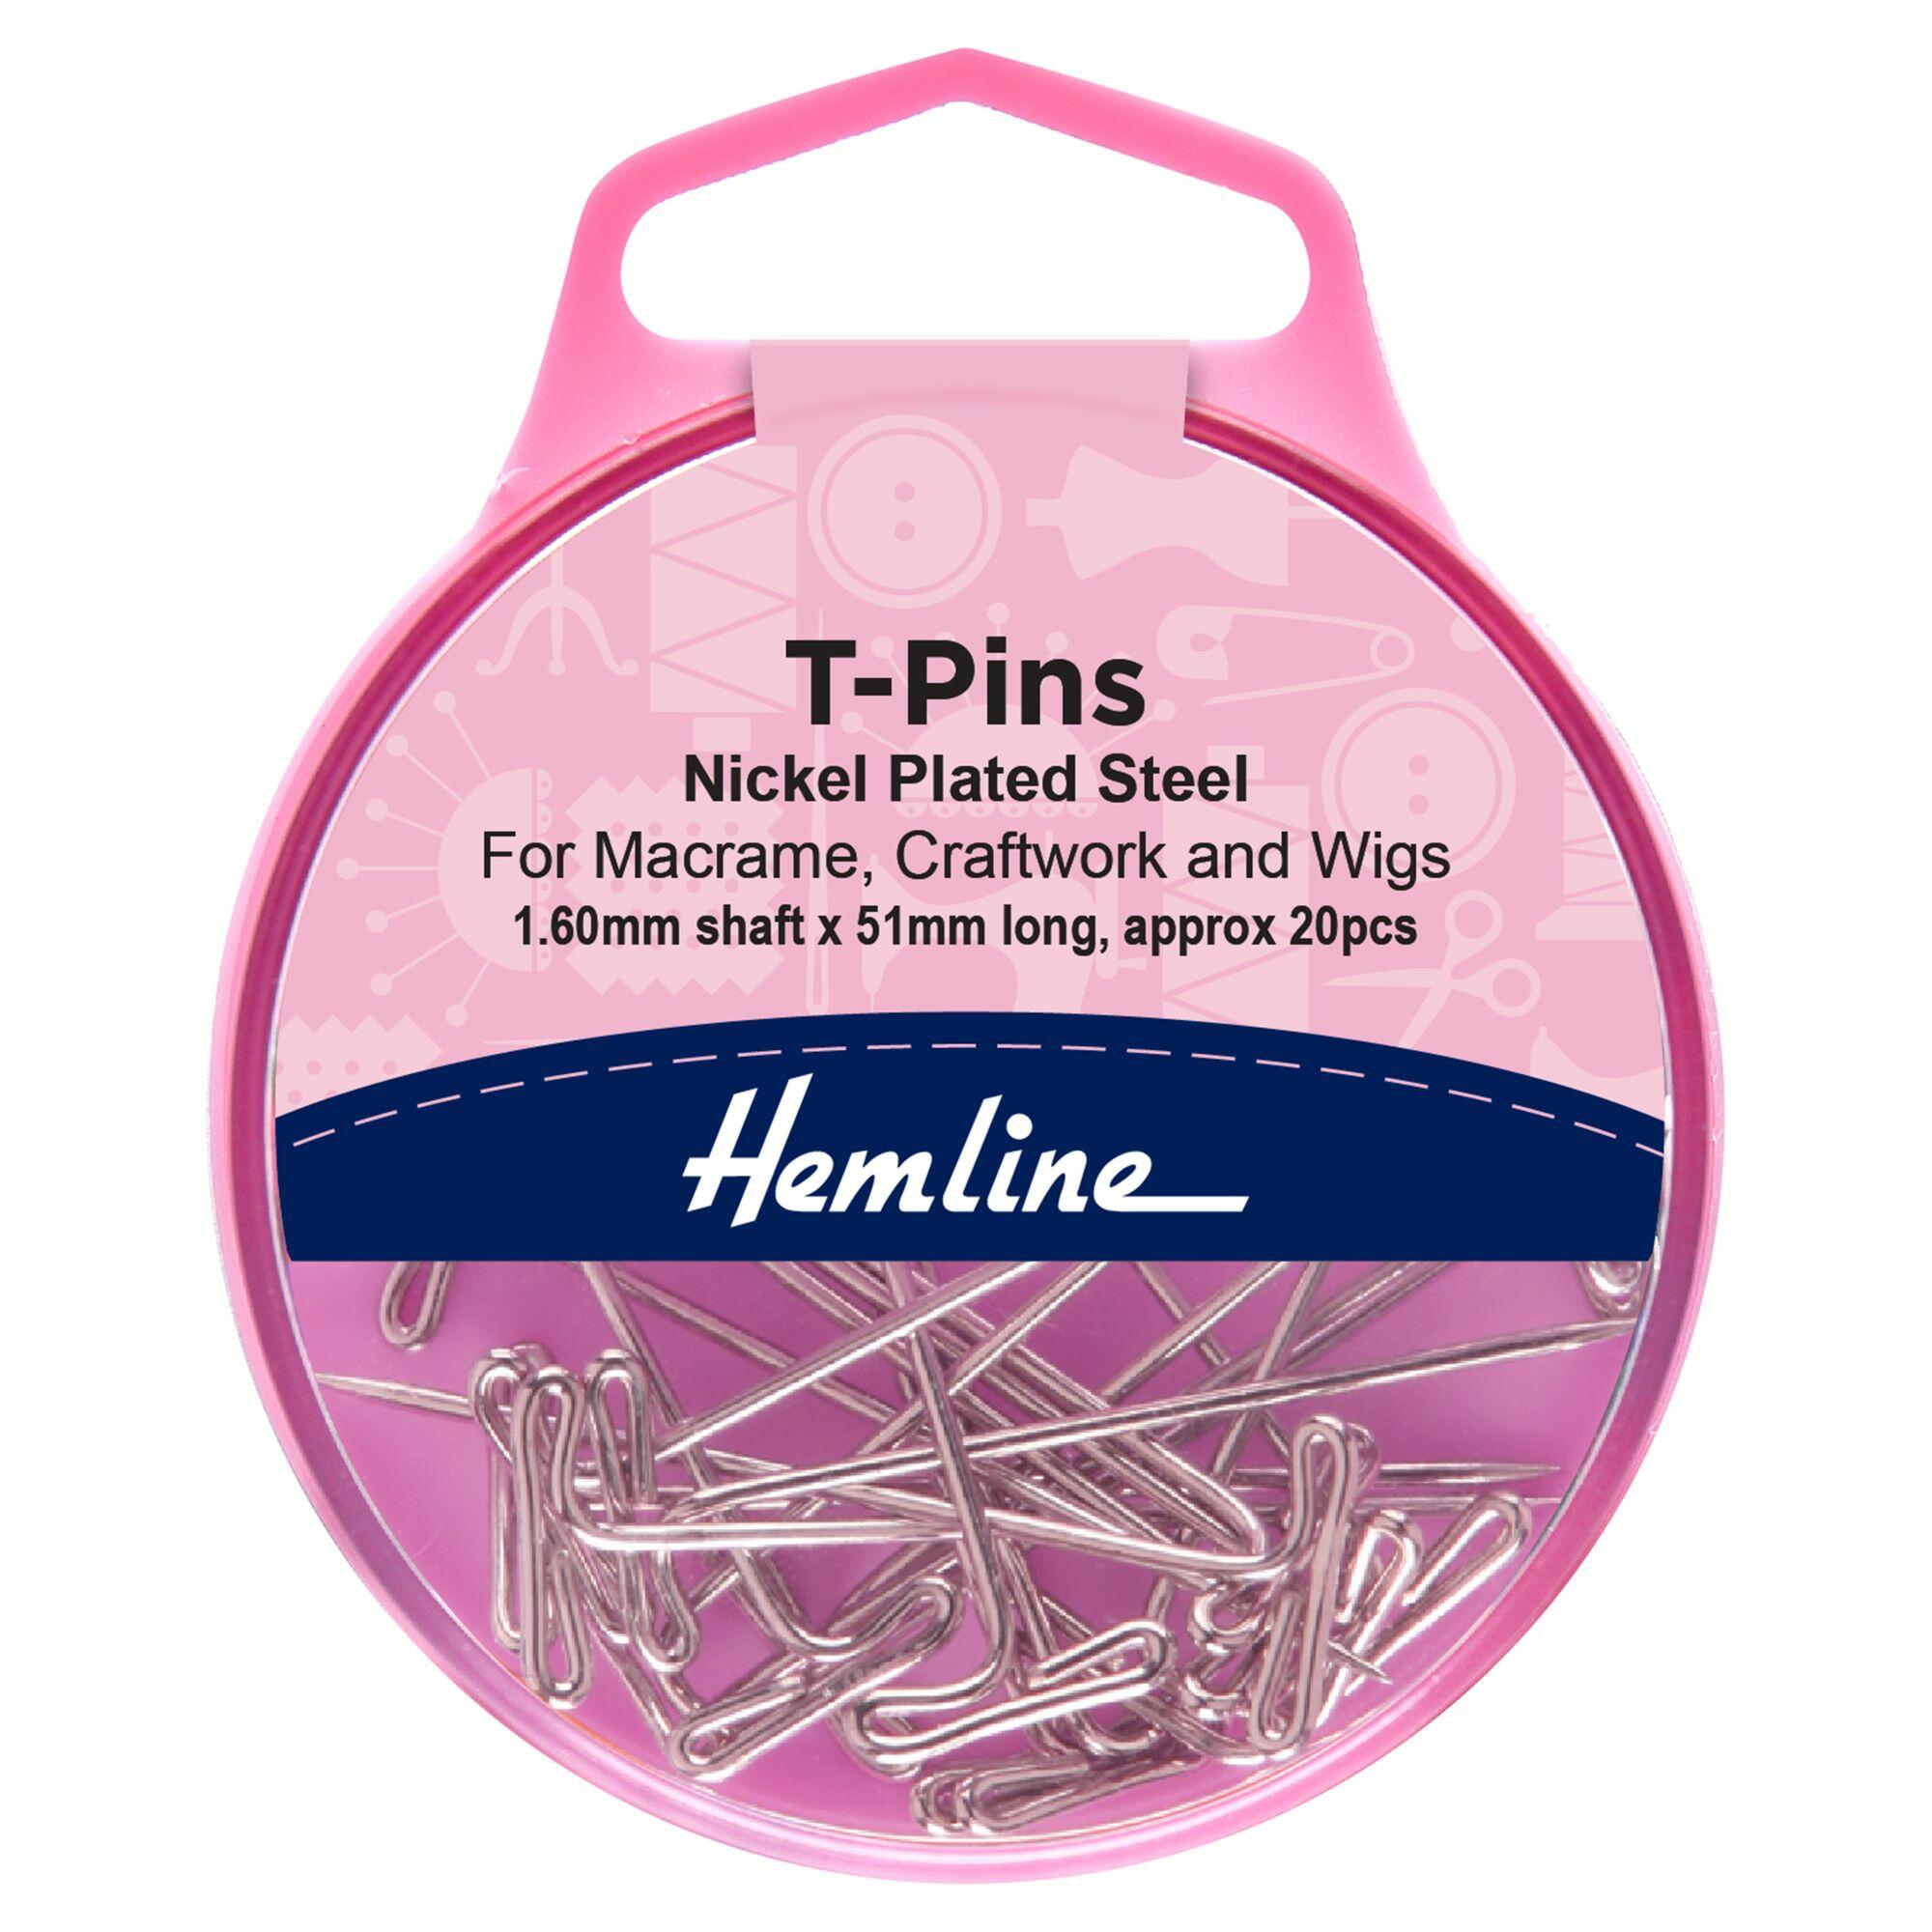 Pink Hemline storage pot with T Pins inside